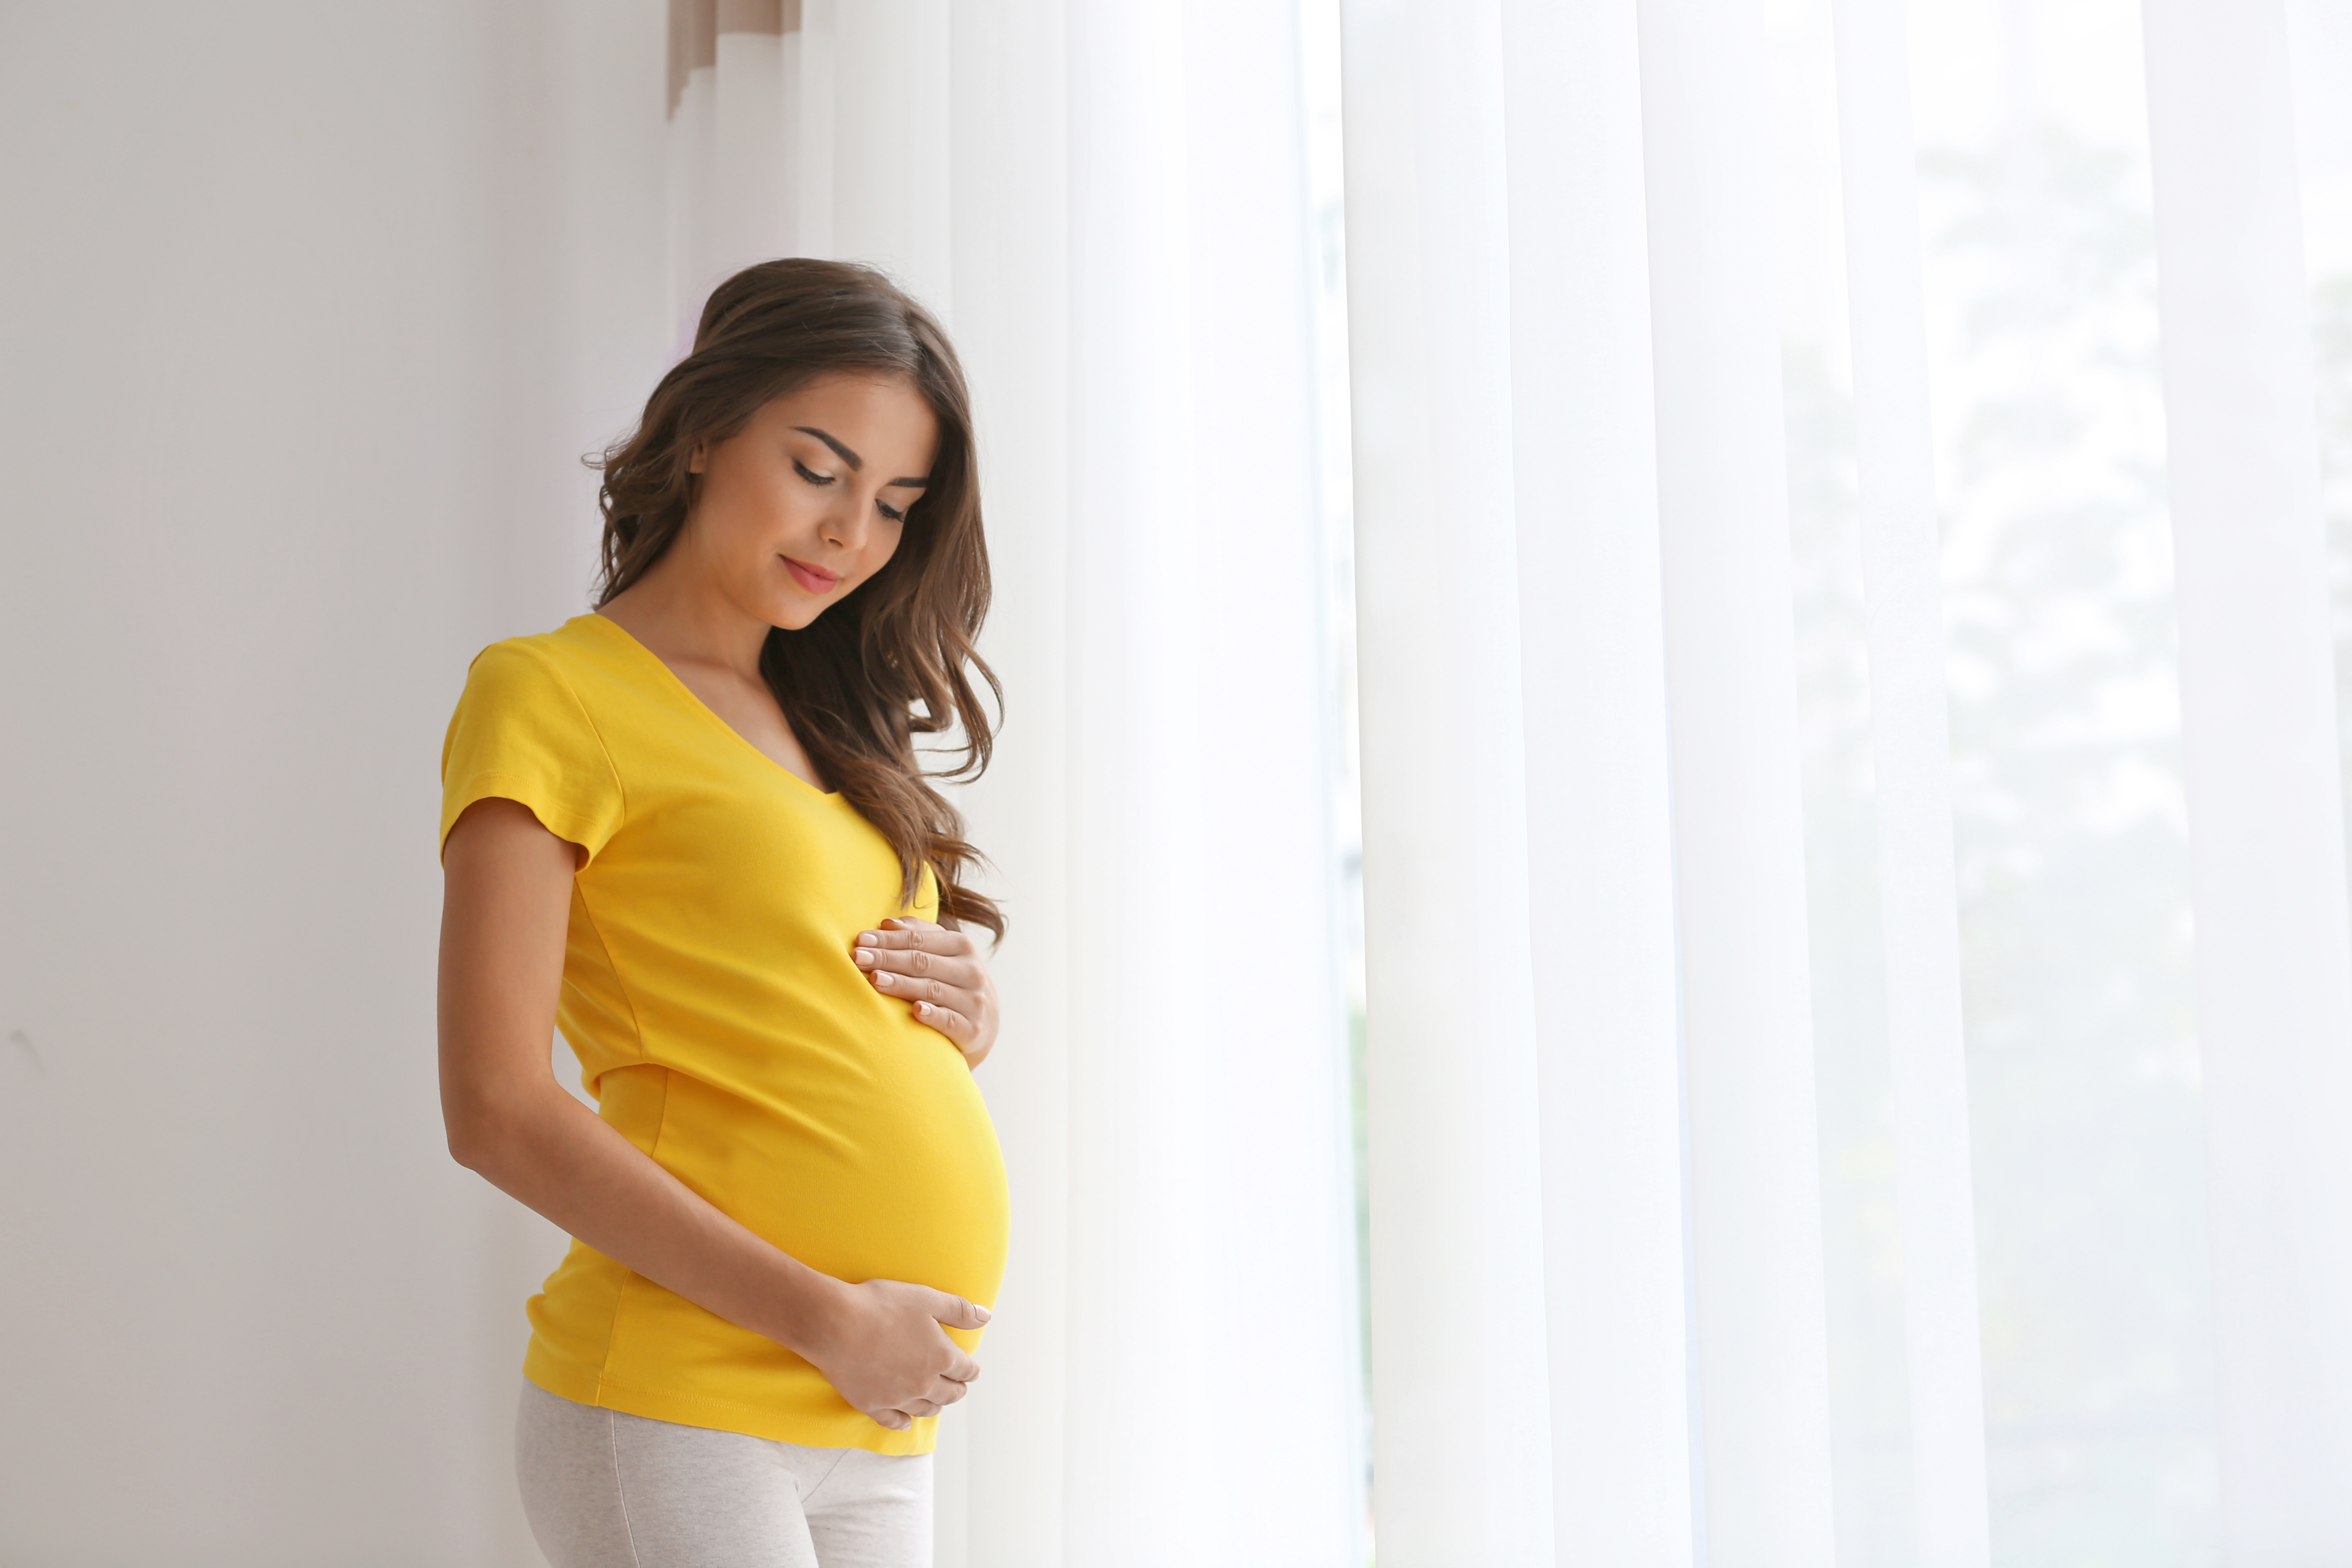 Eine schwangere junge Frau, die ihren Bauch hält | Quelle: Shutterstock